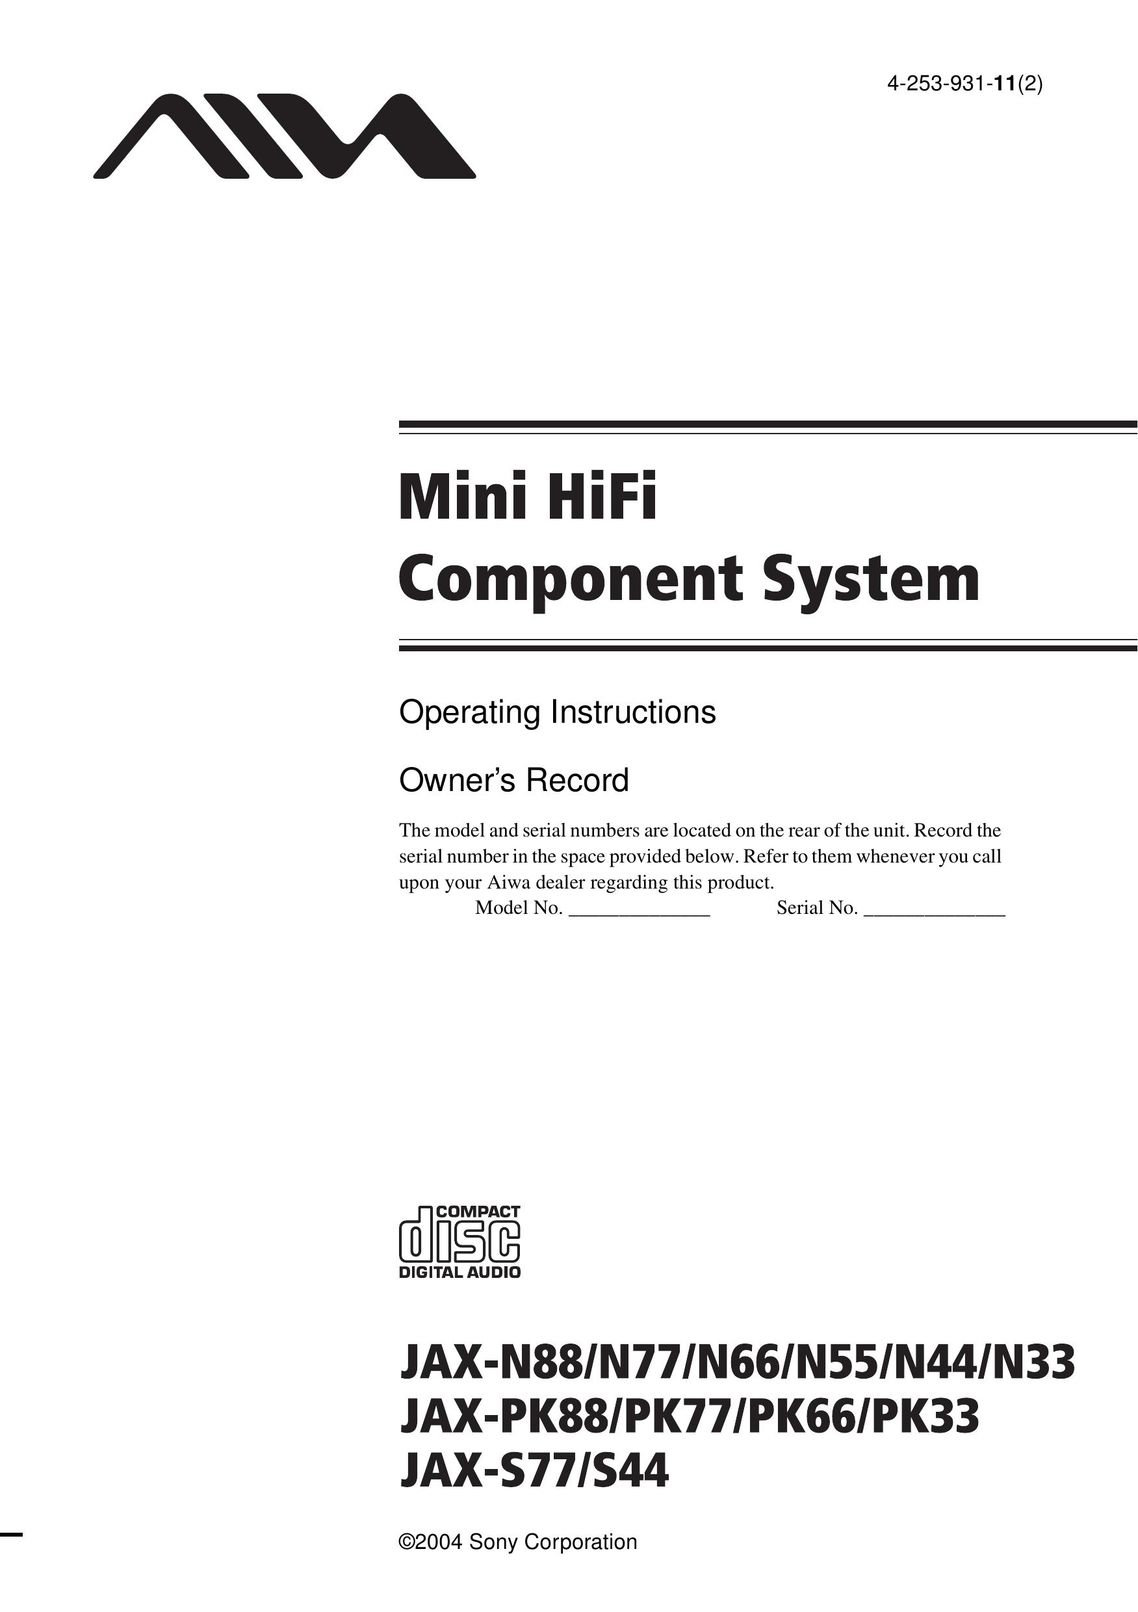 Aiwa JAX-N55 Stereo System User Manual